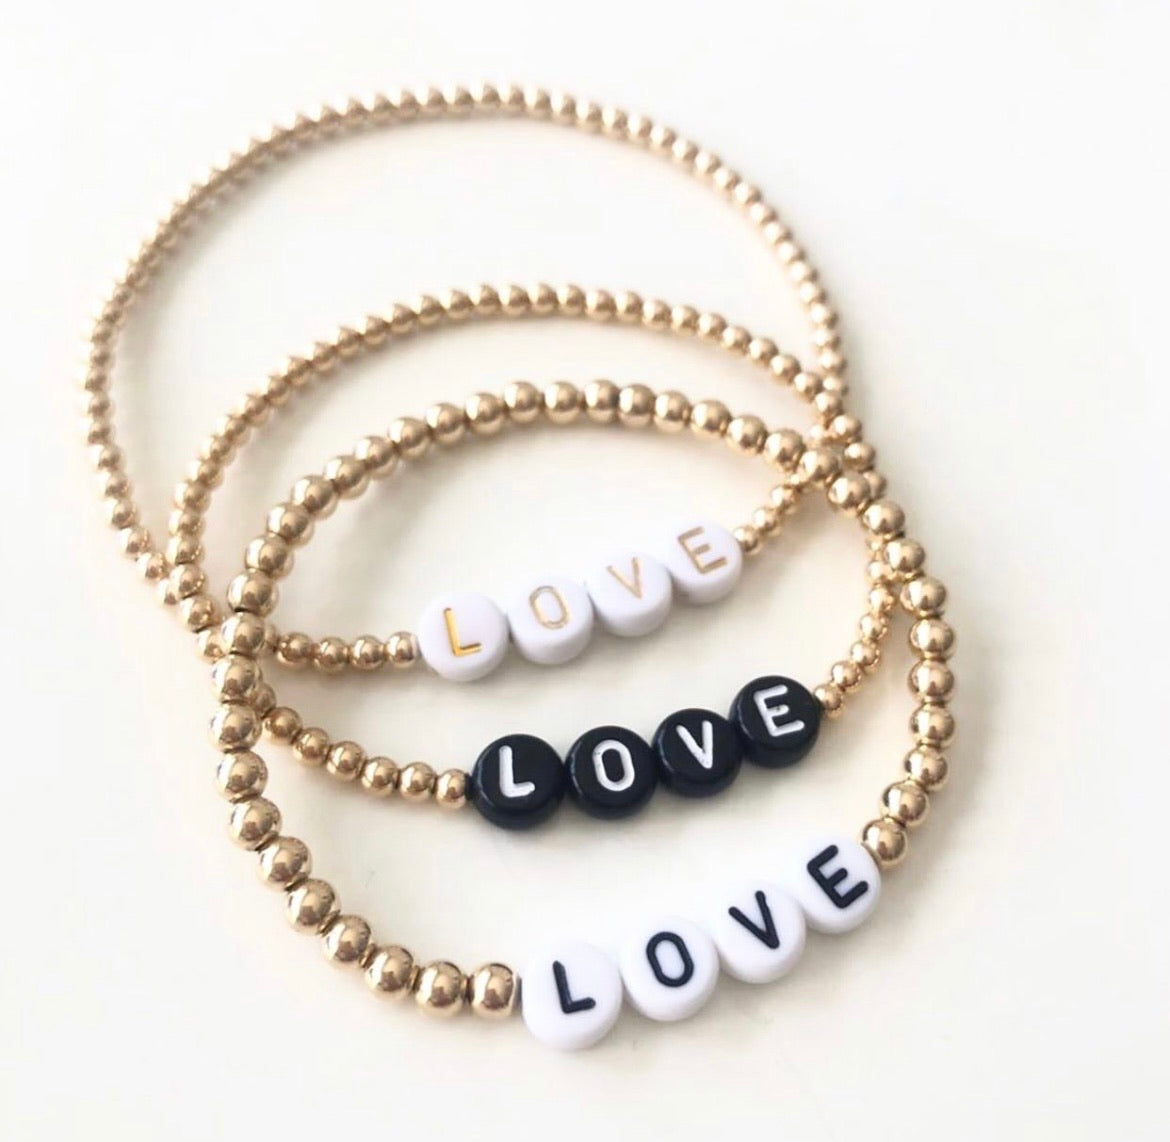 LOVE Bracelet in Gold